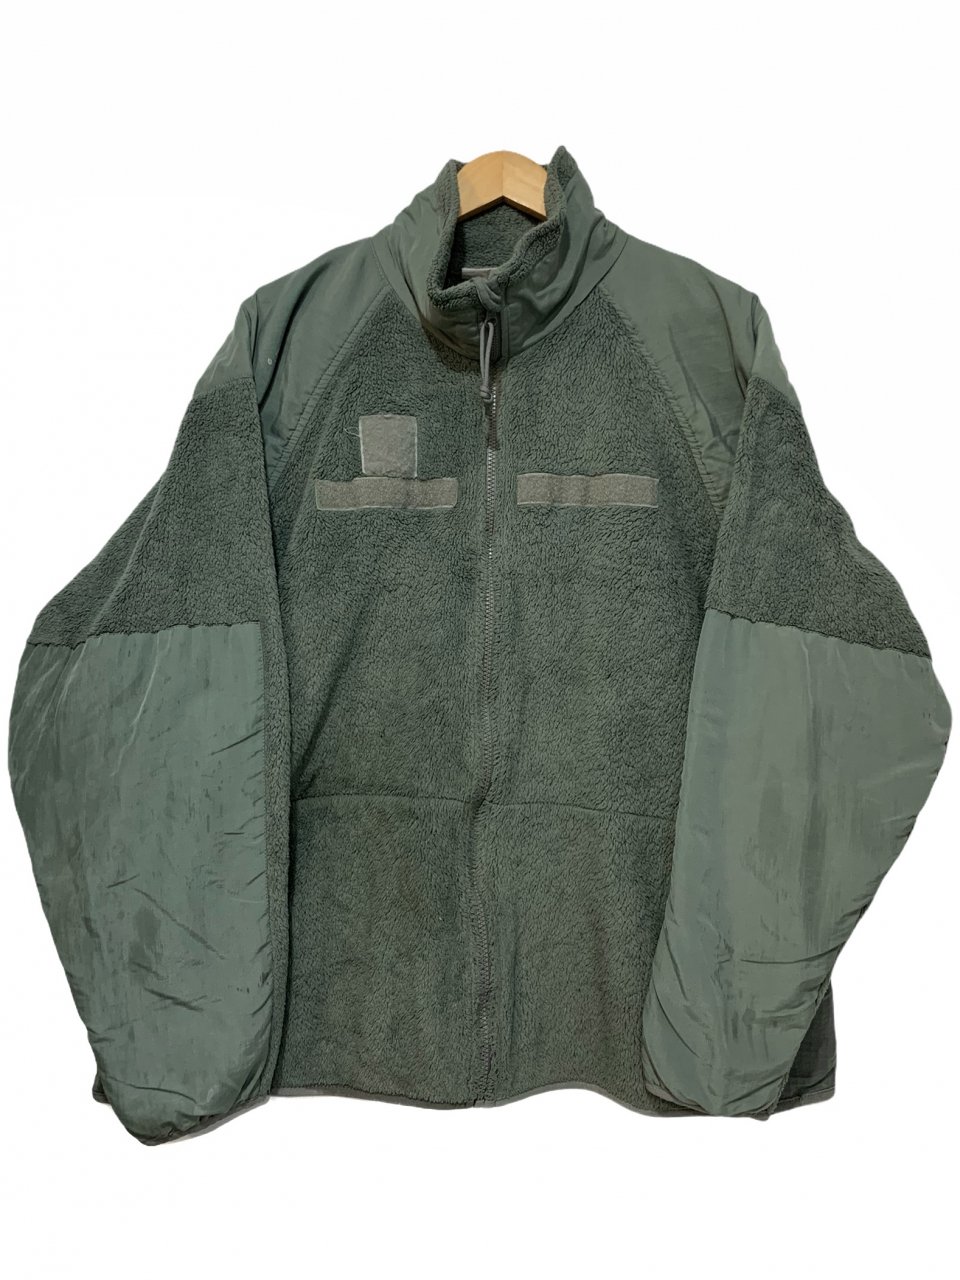 08年製 US ARMY ECWCS GEN3 LEVEL3 Fleece Jacket (FOLIAGE) XLARGE-REGULAR 米軍  第三世代 フリース フォリッジ POLARTEC 古着 - NEWJOKE ONLINE STORE